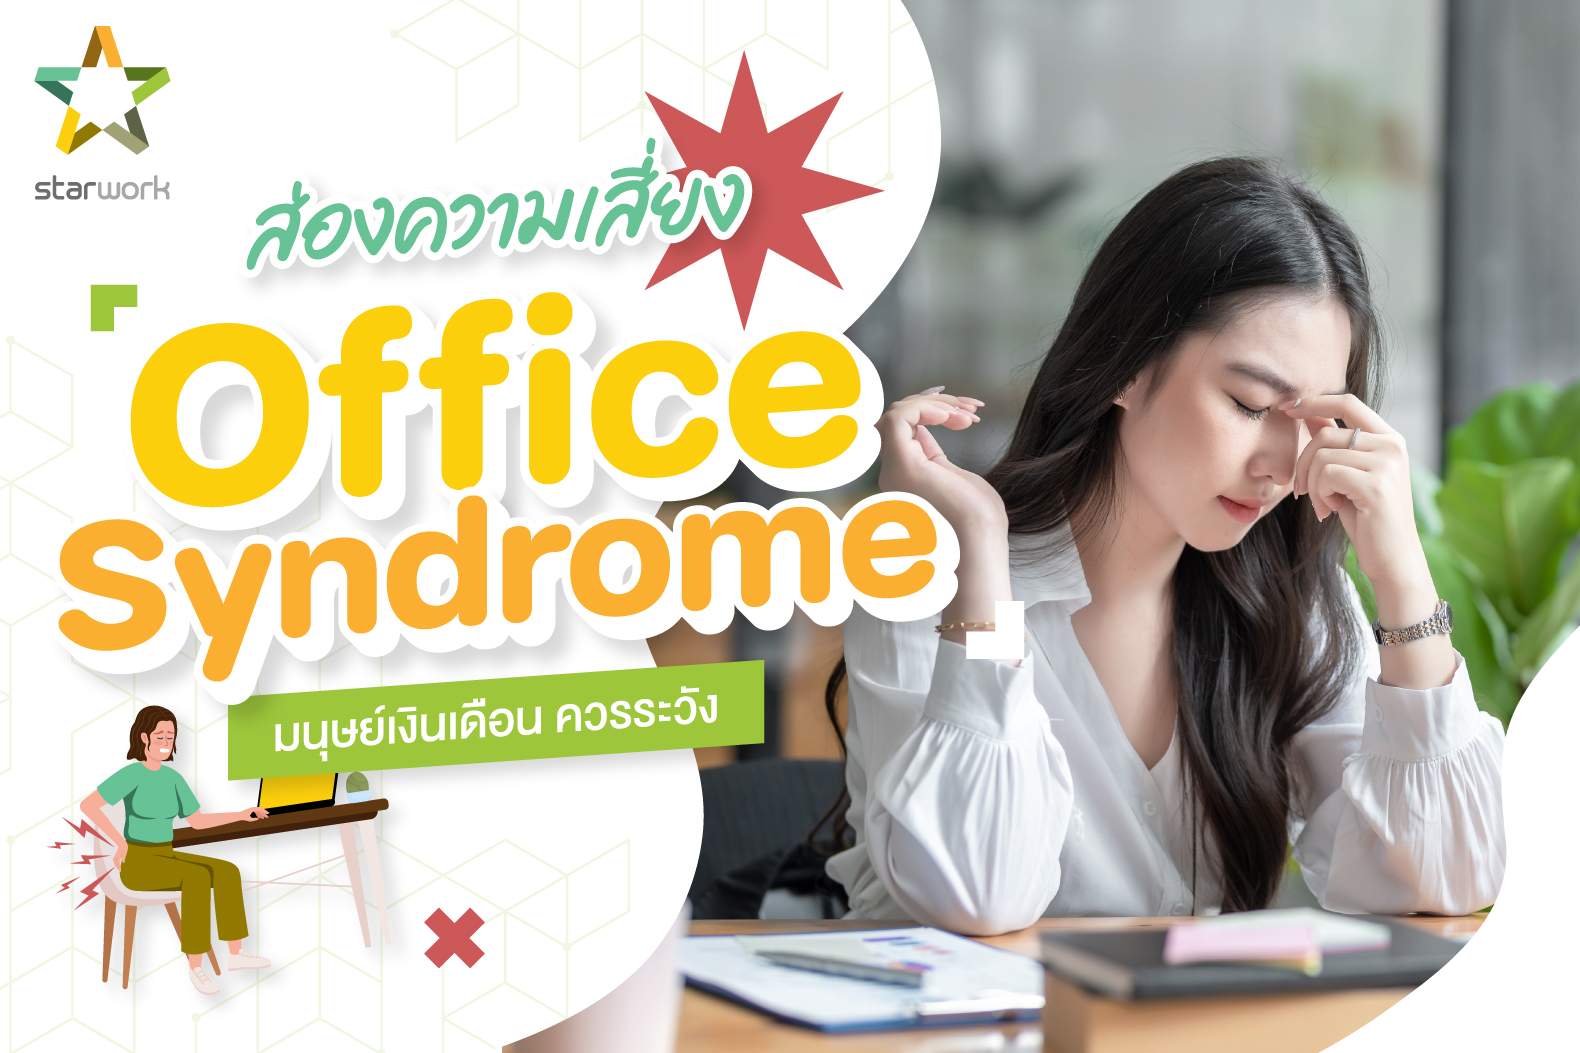 เช็กความเสี่ยง “Office Syndrome” ที่มนุษย์เงินเดือน ควรระวัง